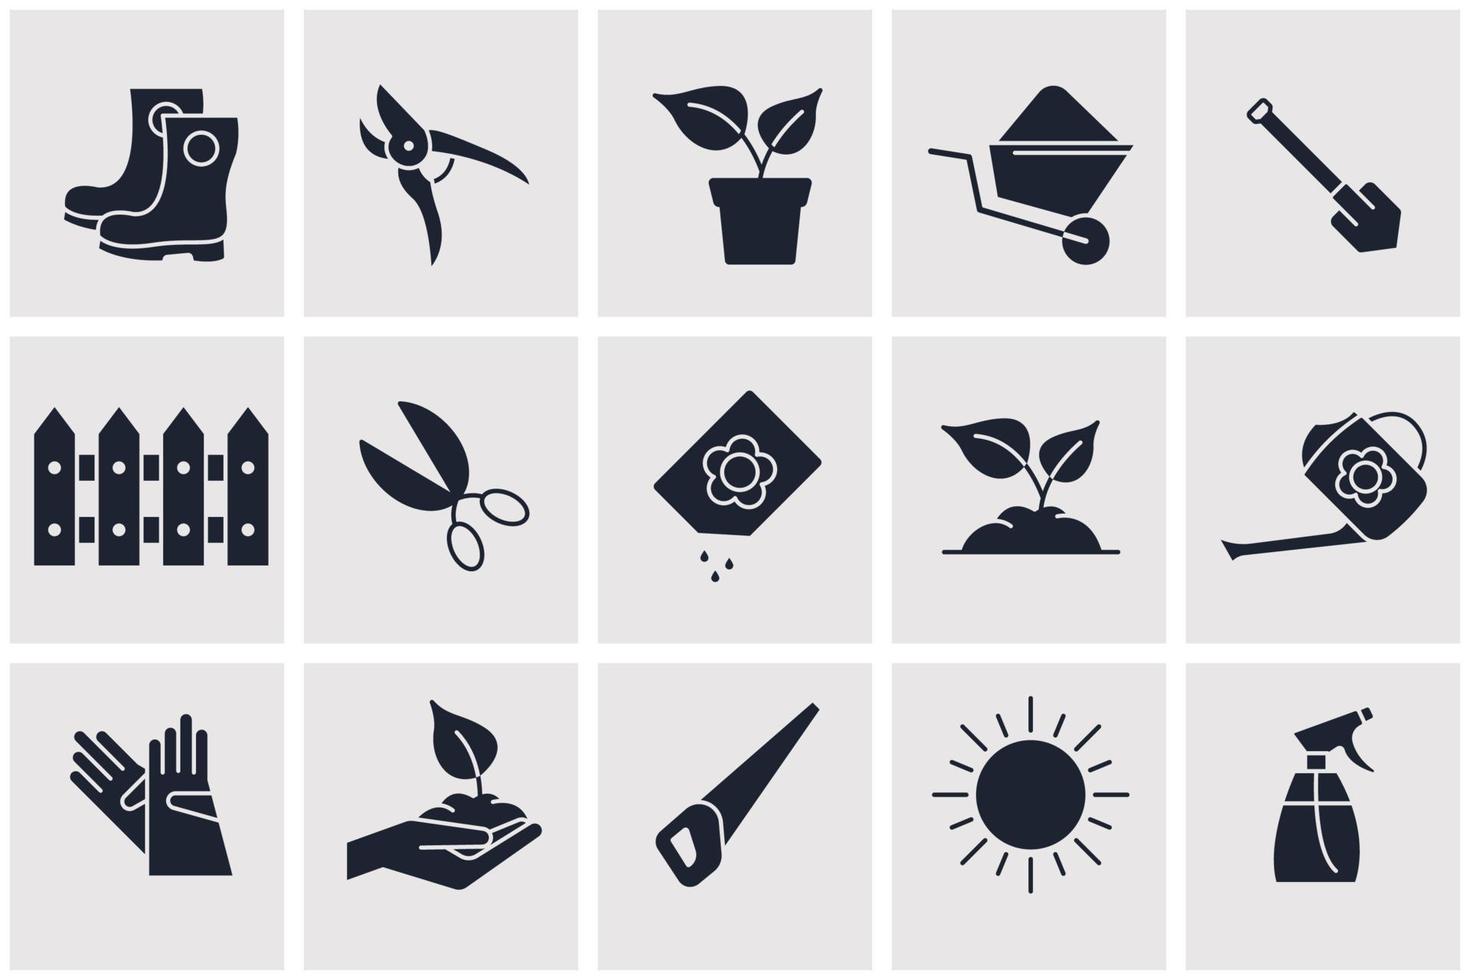 Symbolvorlage für Blumen- und Gartenarbeit für Grafik- und Webdesign-Sammlung Logo-Vektorillustration vektor